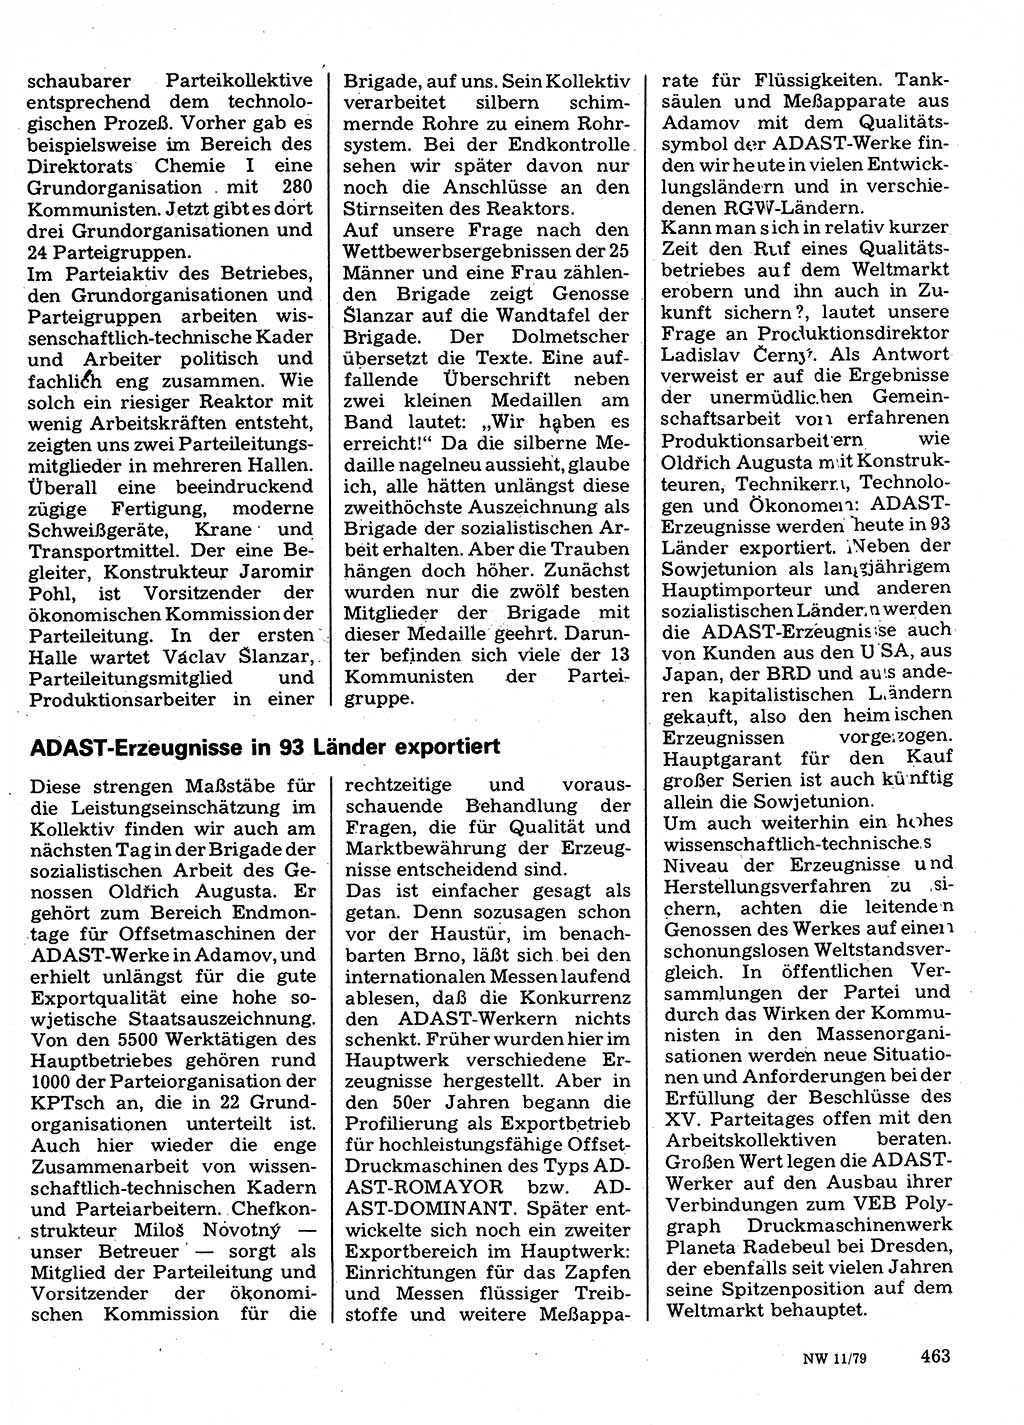 Neuer Weg (NW), Organ des Zentralkomitees (ZK) der SED (Sozialistische Einheitspartei Deutschlands) für Fragen des Parteilebens, 34. Jahrgang [Deutsche Demokratische Republik (DDR)] 1979, Seite 463 (NW ZK SED DDR 1979, S. 463)